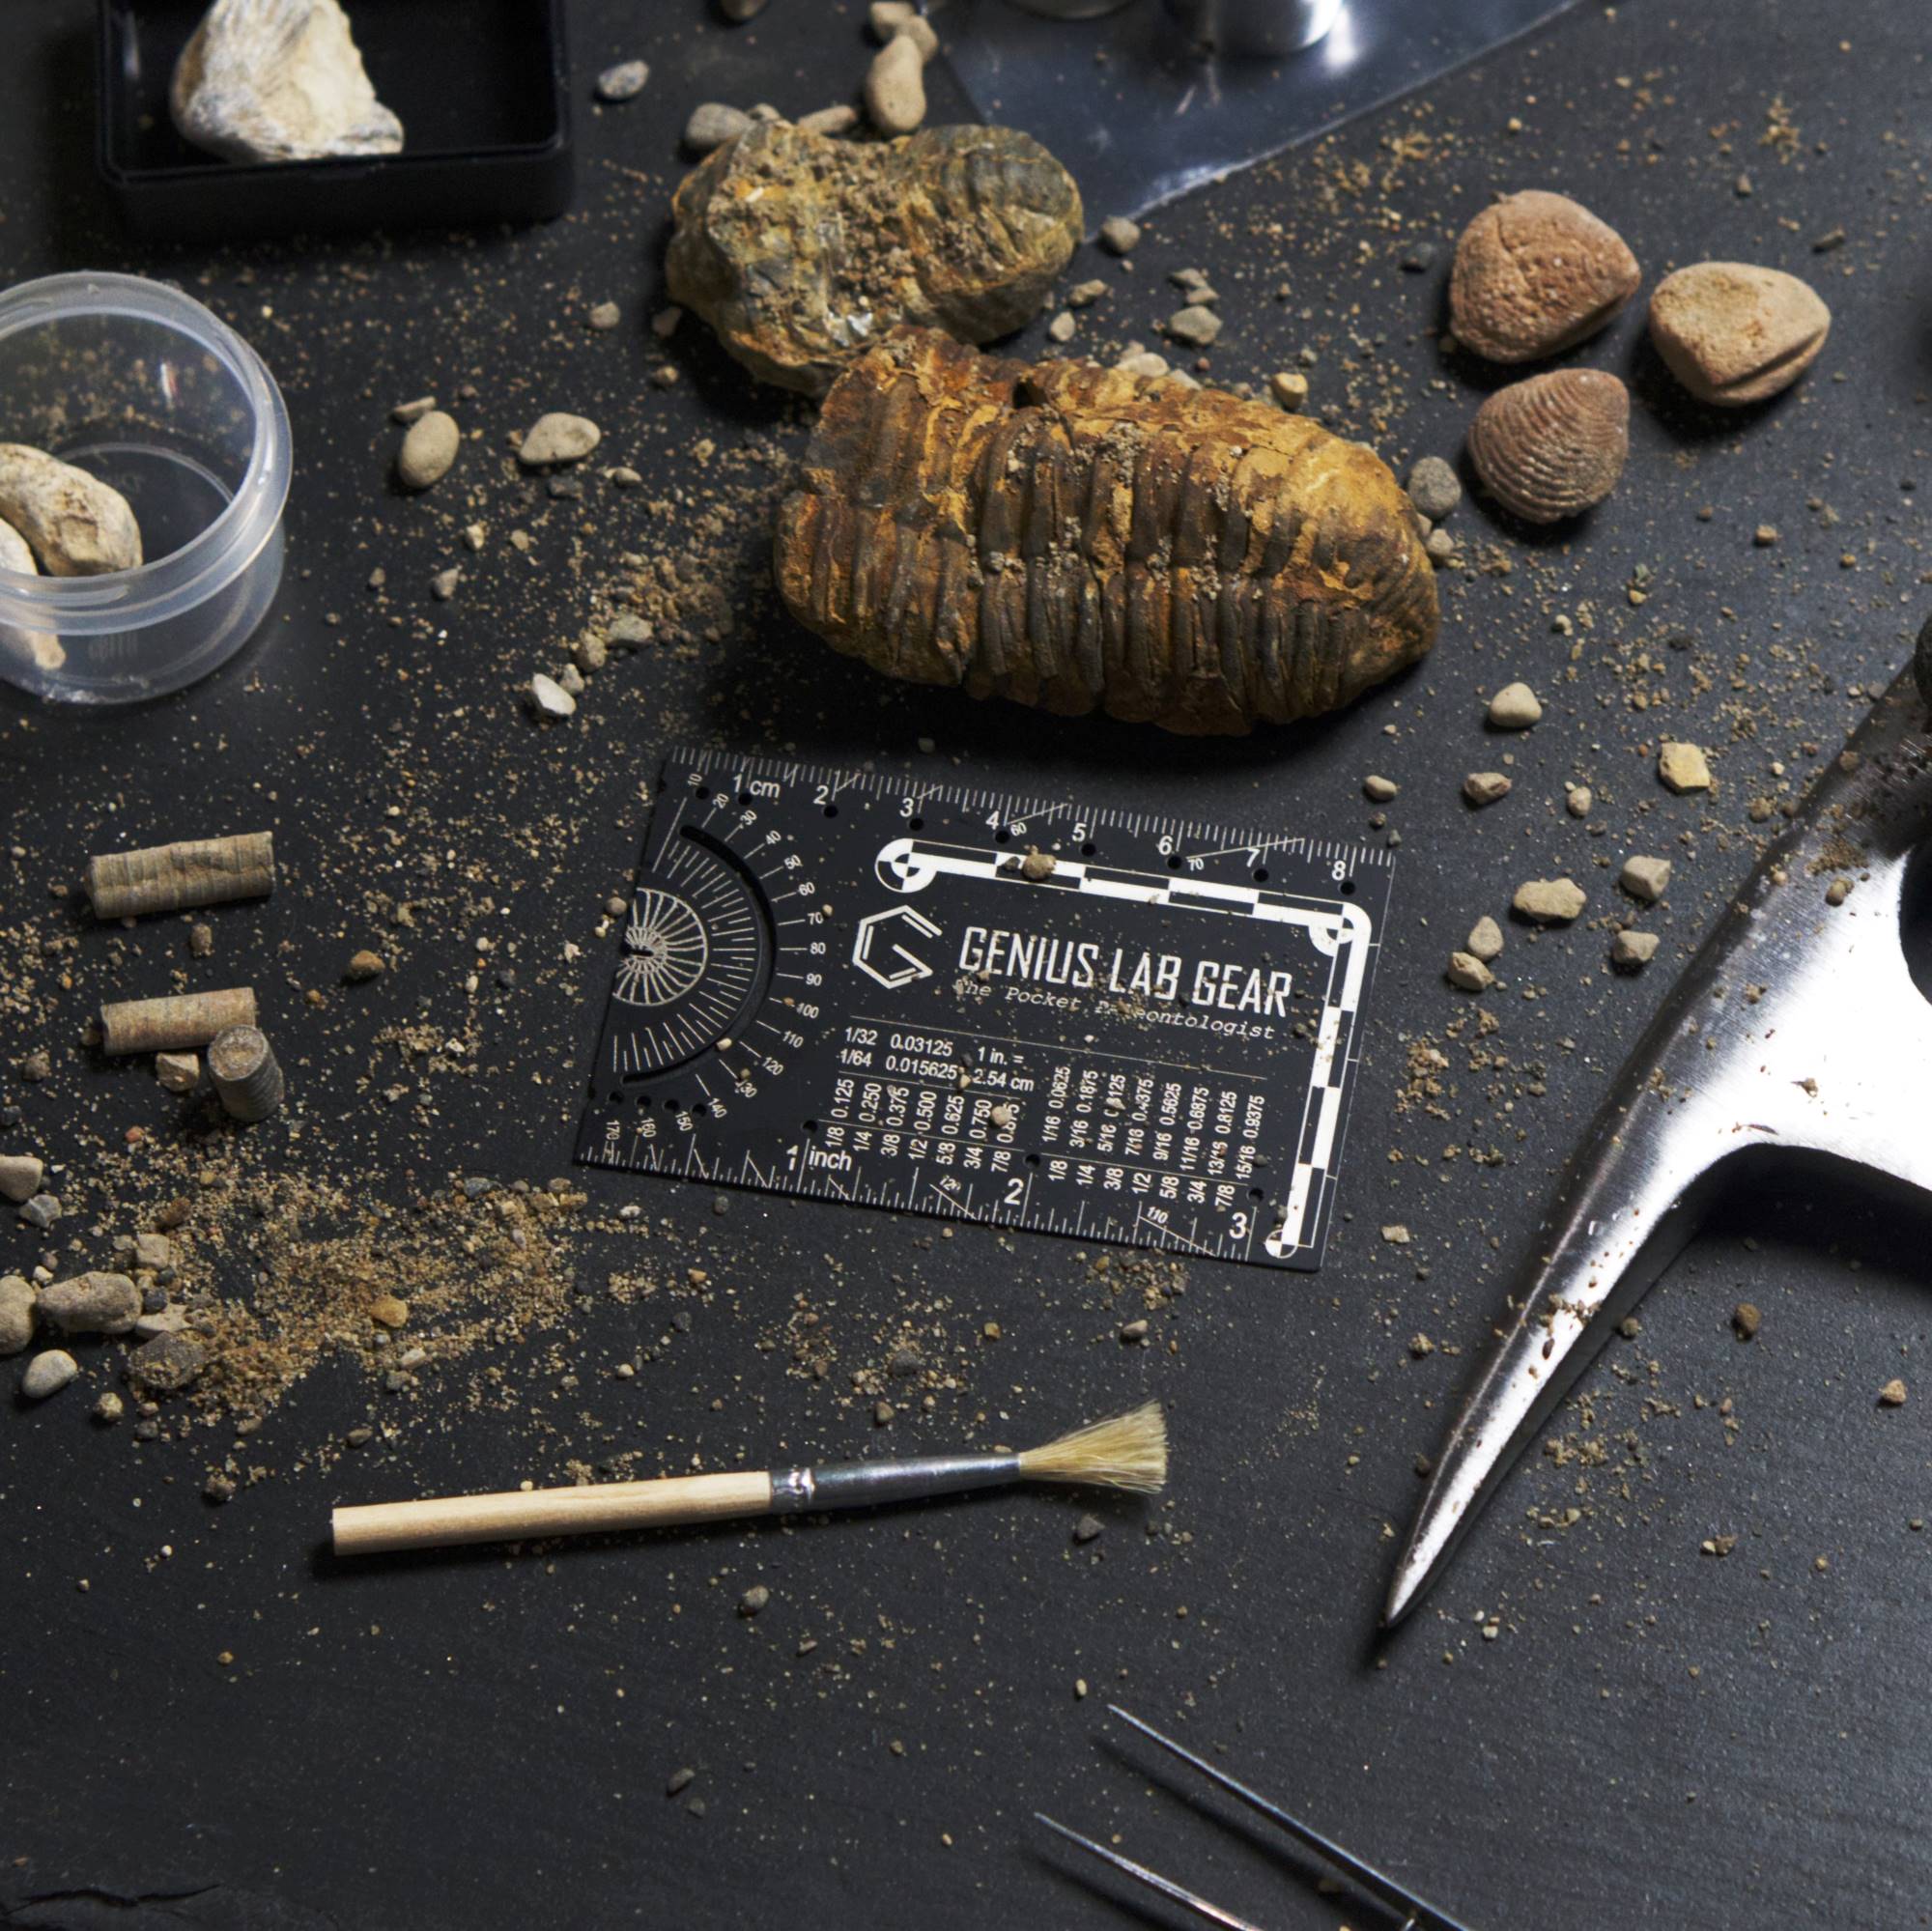 GLG - the pocket paleontologist fossil digging wallet tool